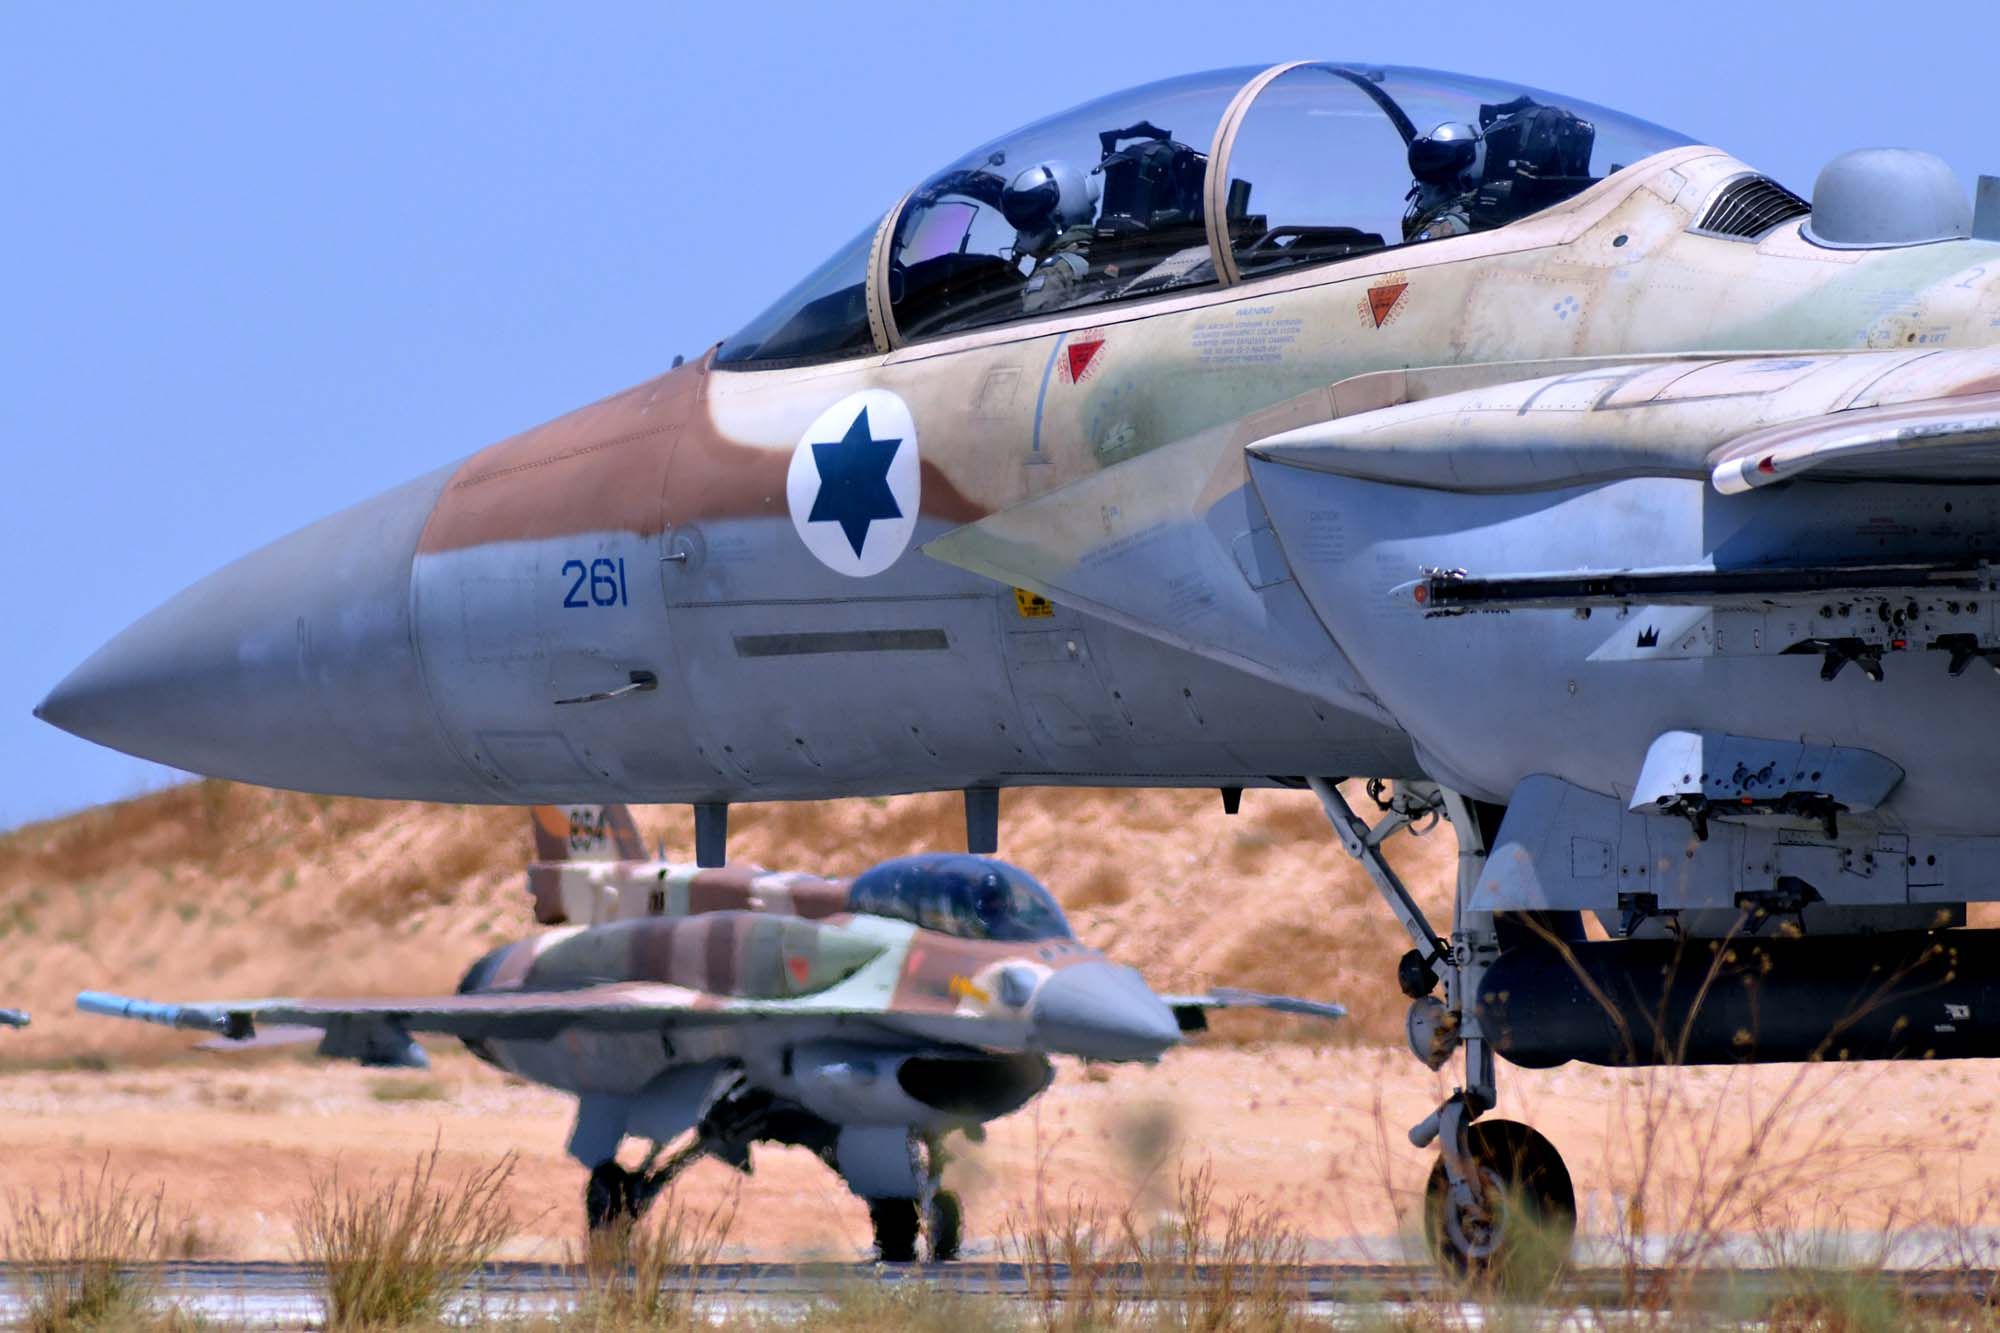 Il ministero della Difesa: “L'esercitazione militare Vega2014 in Sardegna non prevede bombardamenti”